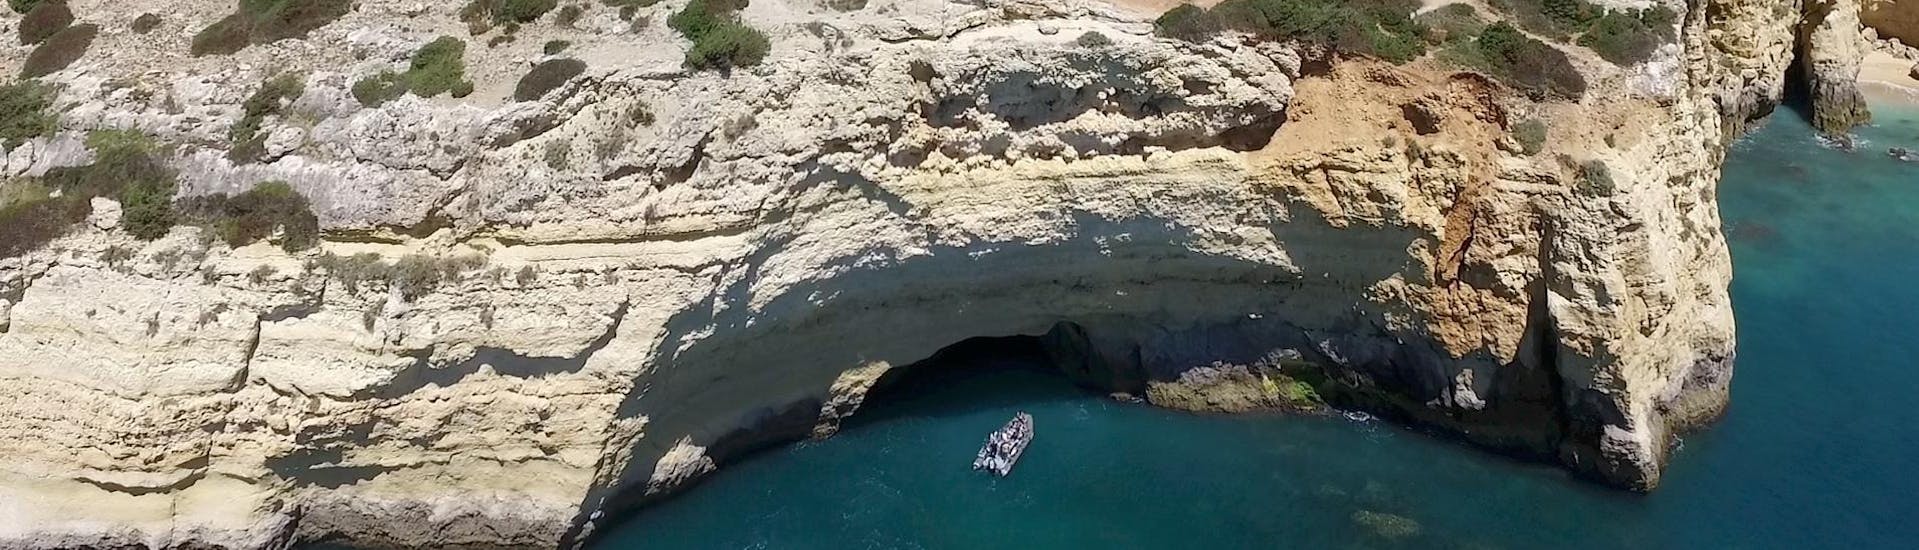 Tijdens een boottocht van Portimao naar de grotten van Benagil met Seadventure Boat Trips, vaart een boot langs de kust van Portimao.